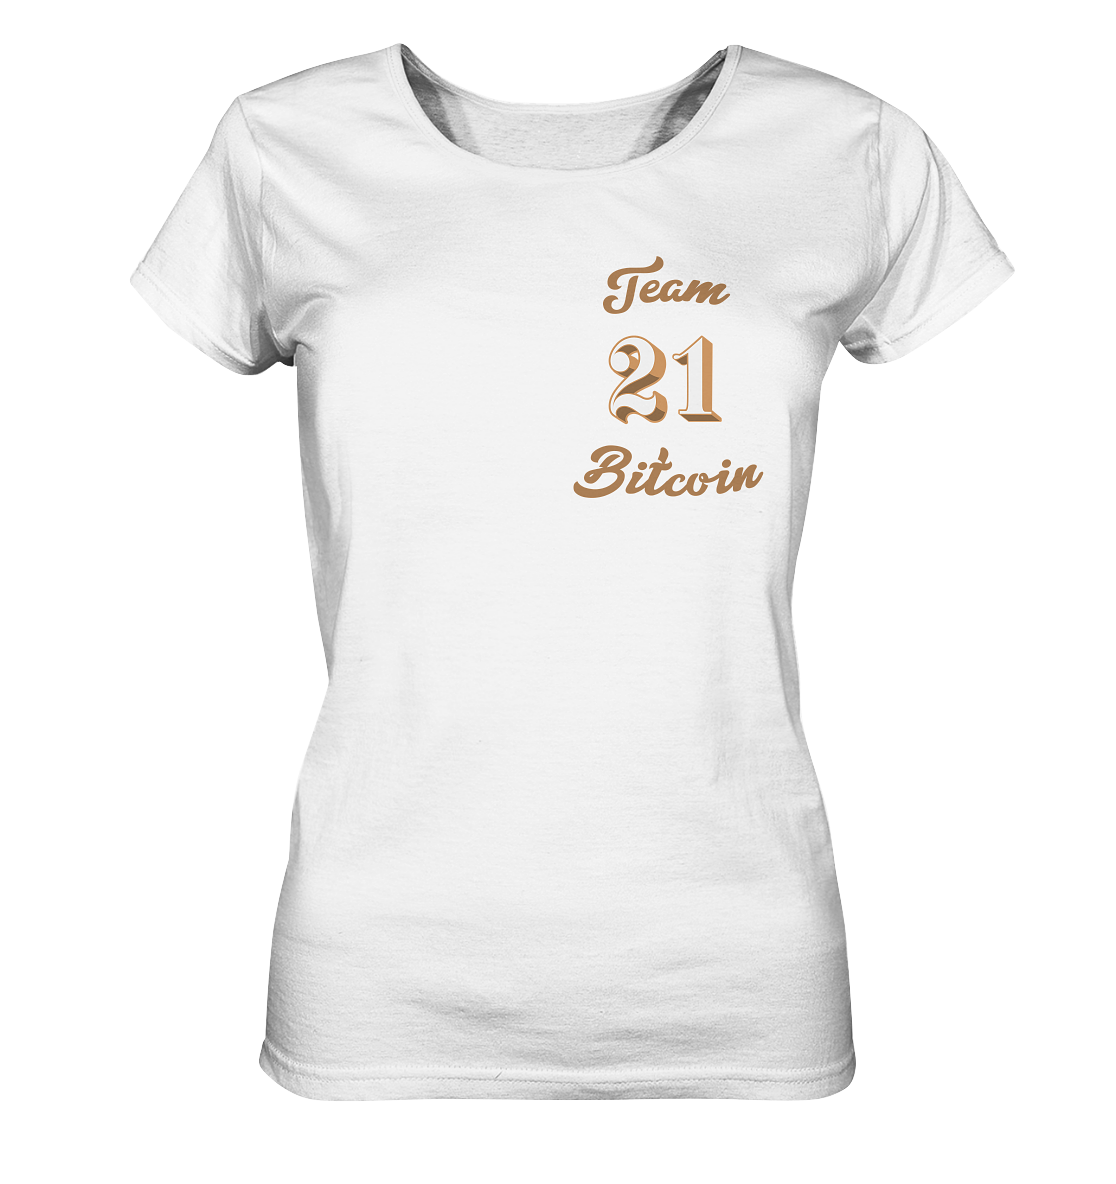 Bitcoin Frauen T-Shirt "Team Bitcoin 21" - Frauen Organic Shirt